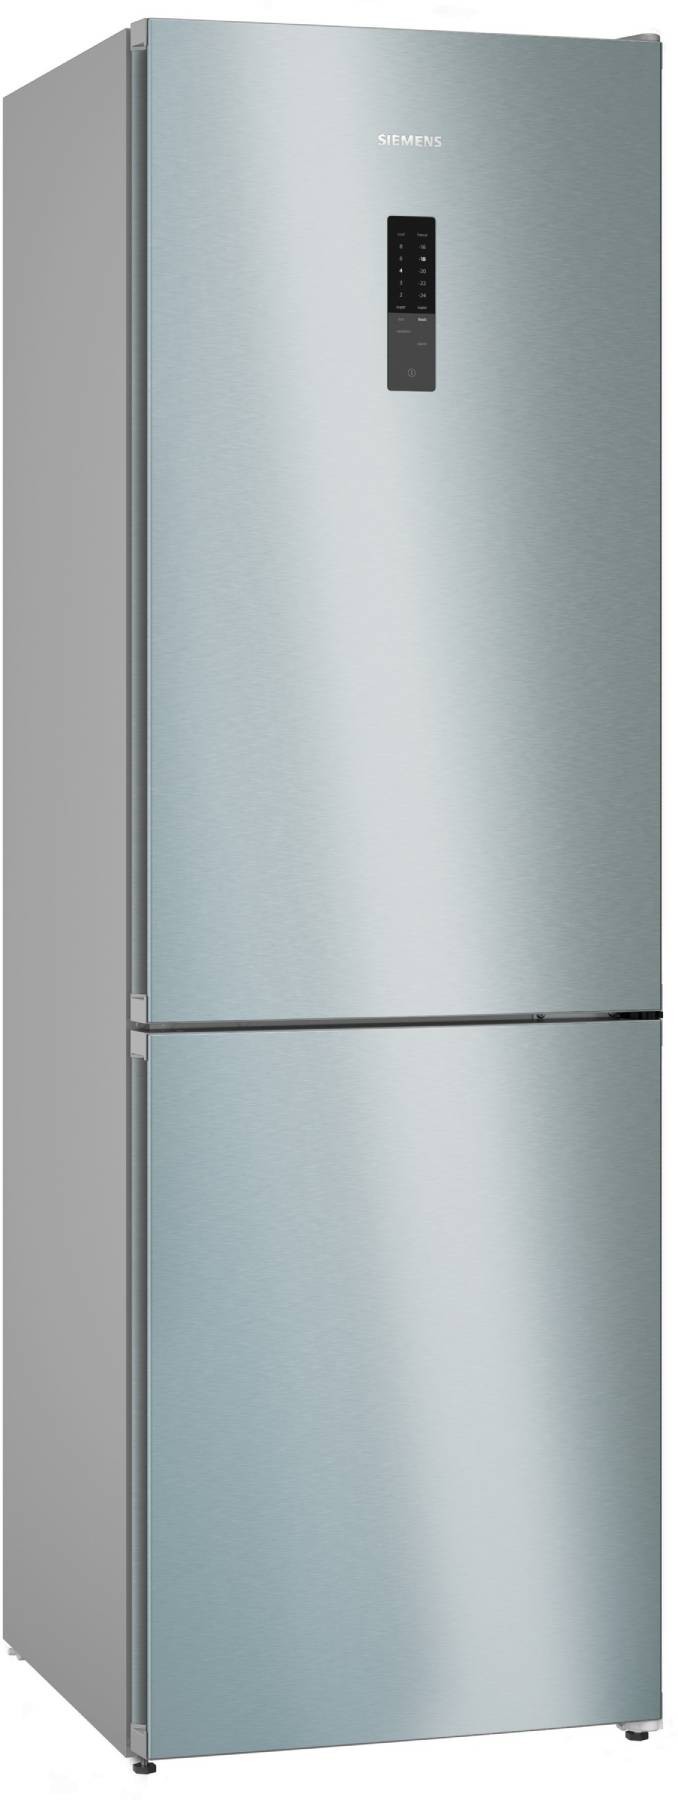 SIEMENS Réfrigérateur congélateur bas iQ300 Froid ventilé 321L Inox - KG36NXIDF